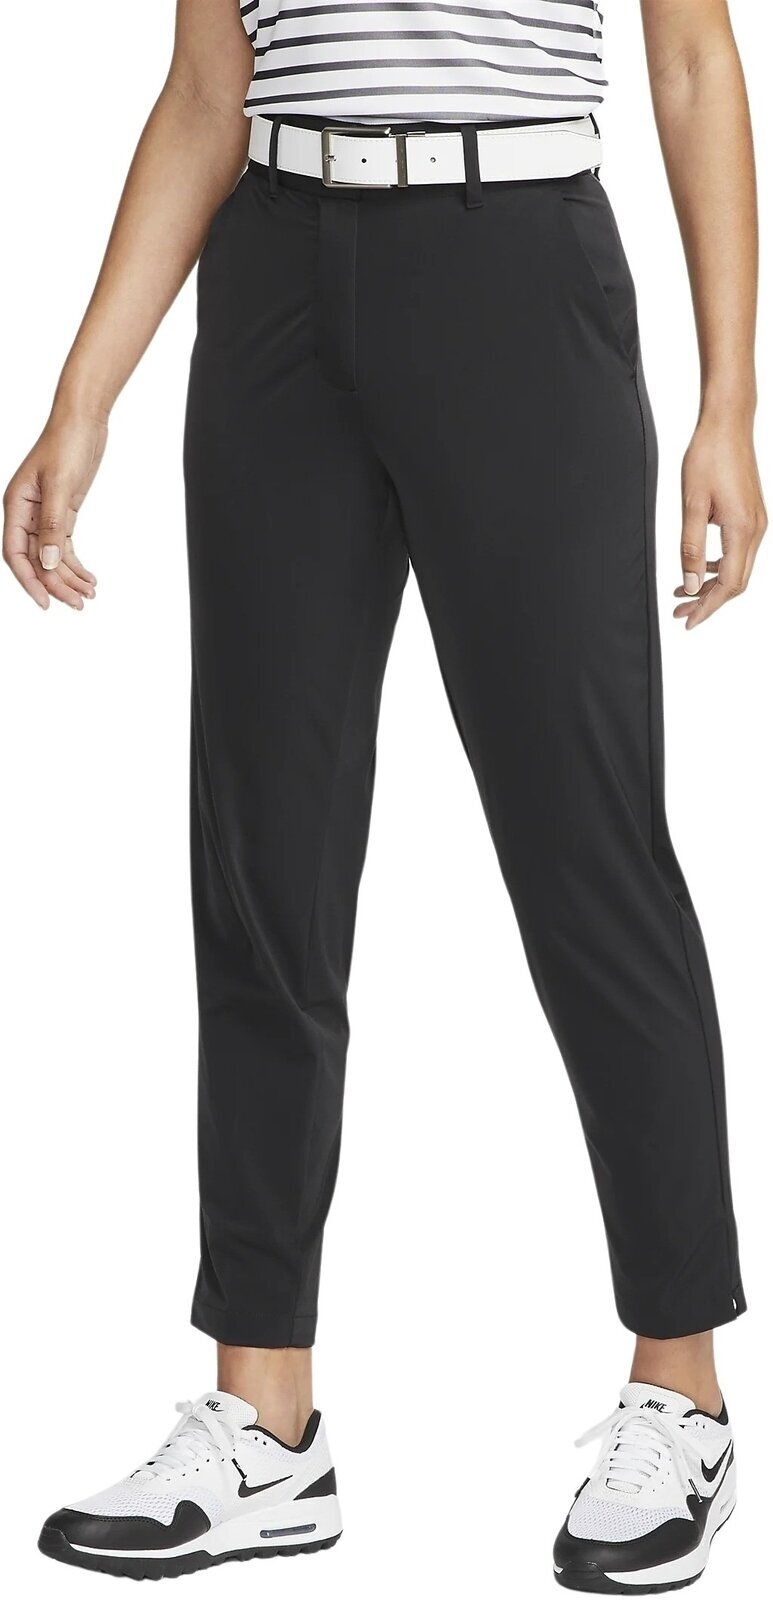 Pantaloni Nike Dri-Fit Tour Womens Pants Black/White S